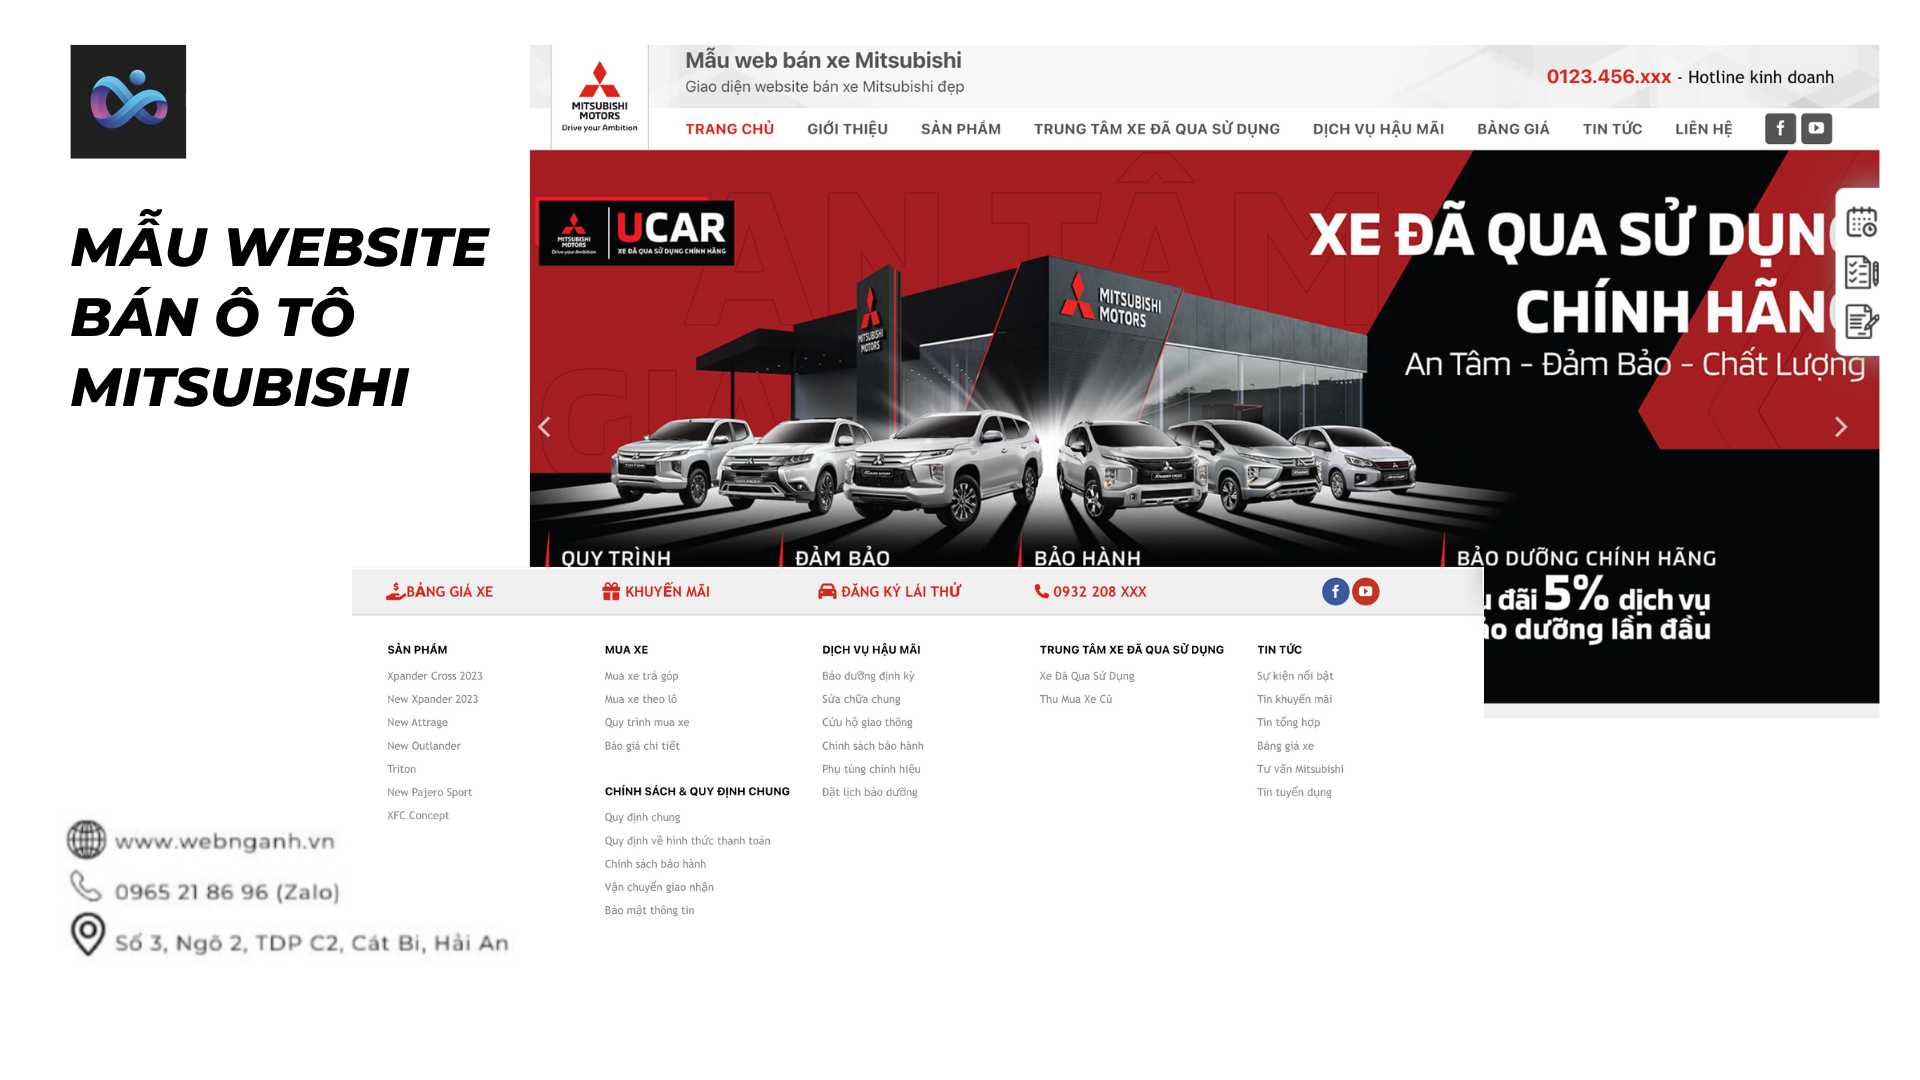 Mẫu Website bán ô tô Mitsubishi